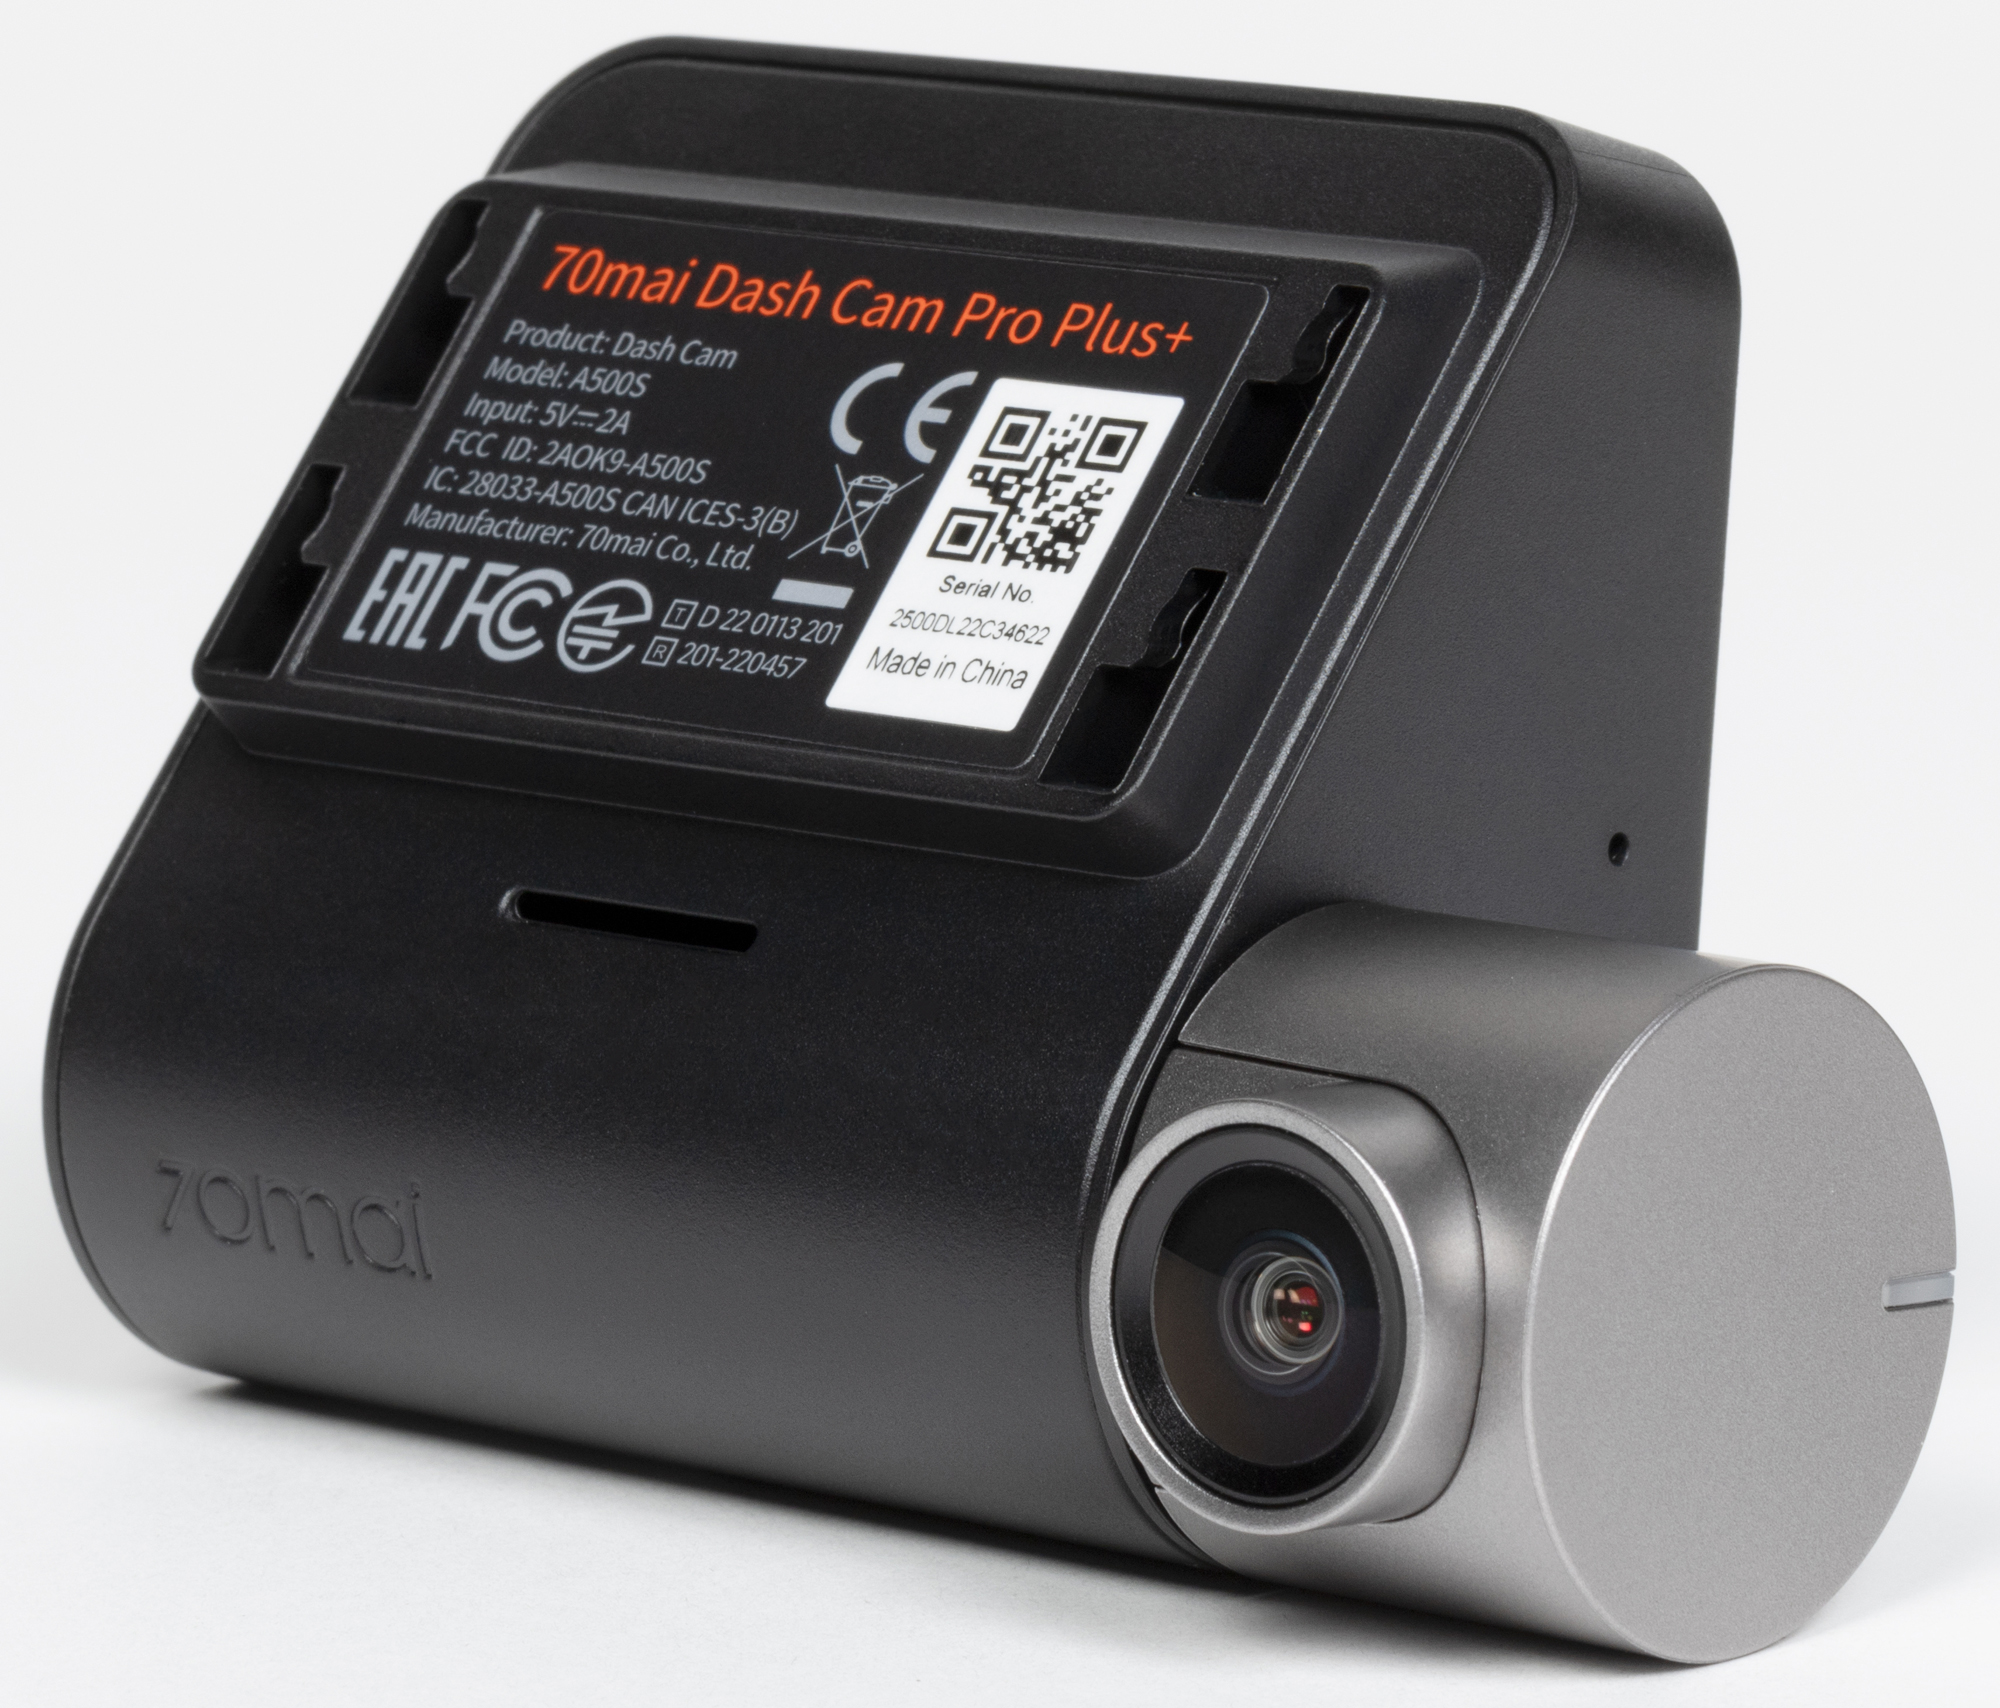 Регистратор 70mai pro. Комплектация видеорегистратора a500s Dash cam Pro Plus+. Как разобрать видеорегистратор. Видеорегистратор в разборе.